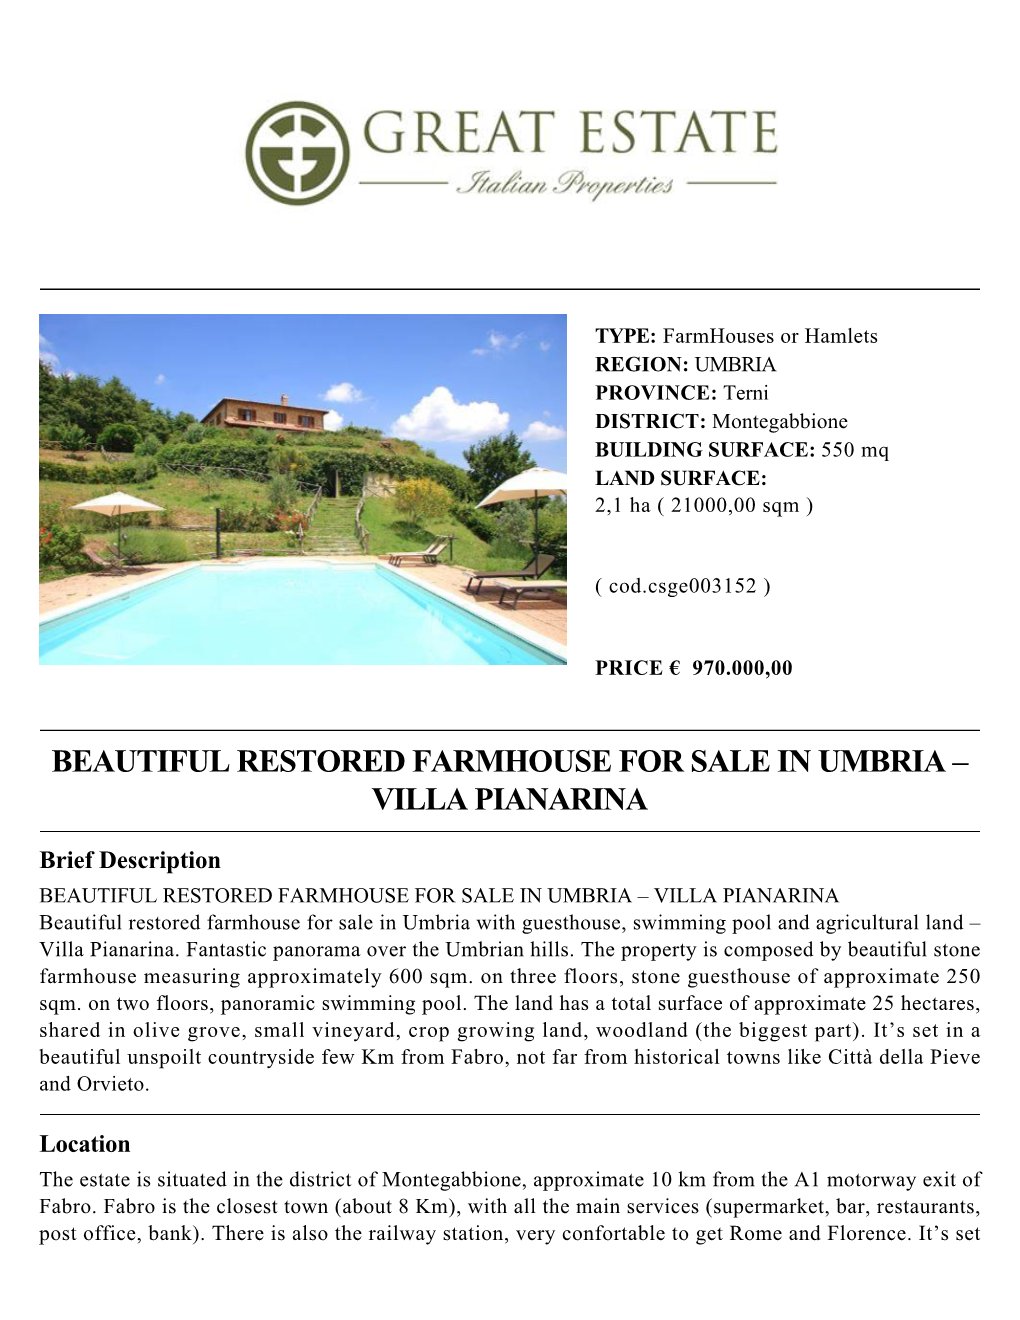 Beautiful Restored Farmhouse for Sale in Umbria – Villa Pianarina